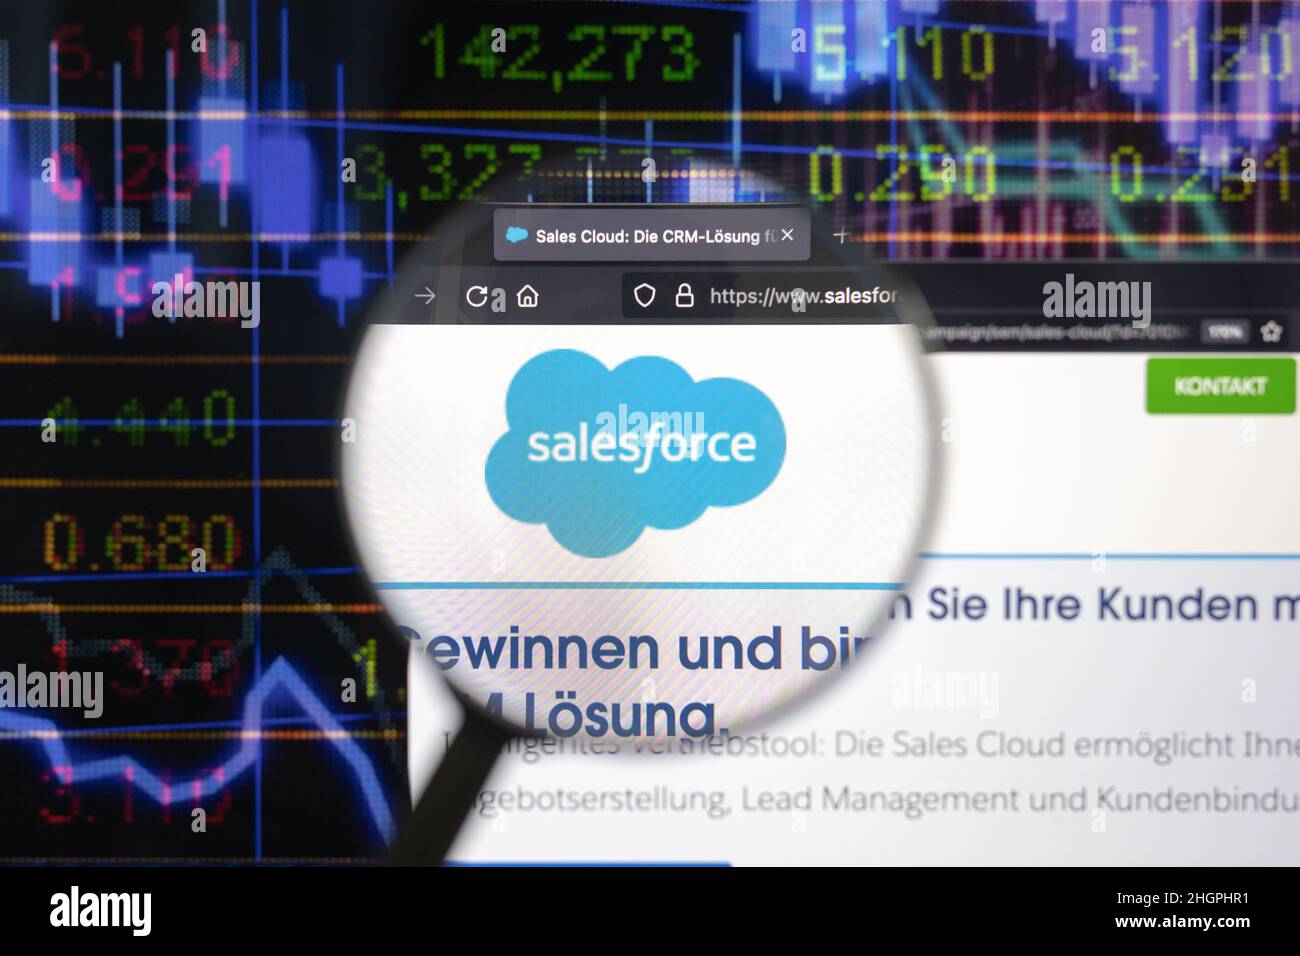 Logotipo de la empresa de Salesforce en un sitio web con desarrollos borrosos del mercado de valores en segundo plano, visto en una pantalla de ordenador a través de una lupa. Foto de stock